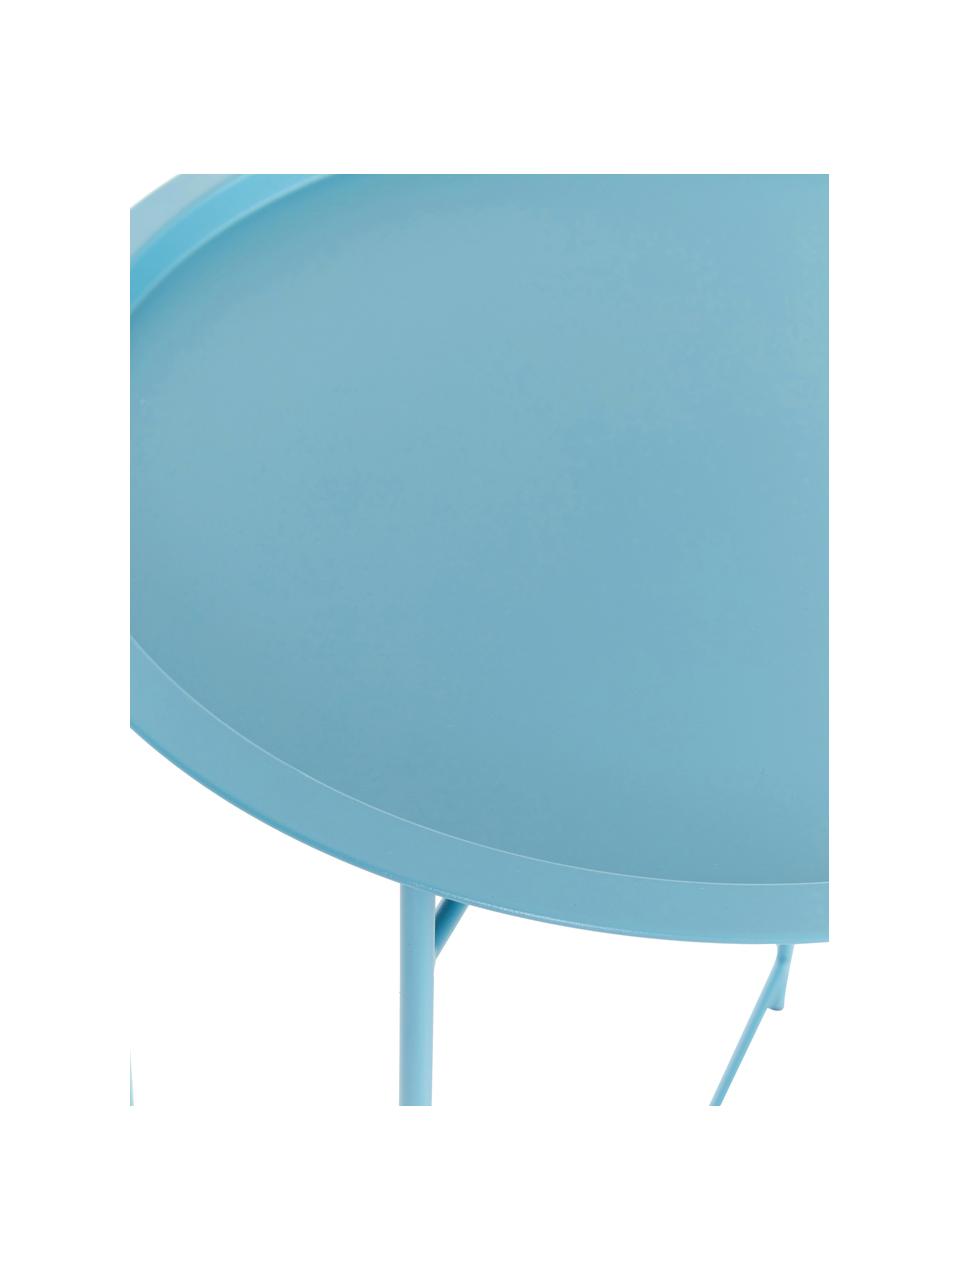 Kovový podnosový stolek Sangro, Kov s práškovým nástřikem, Modrá, Ø 46 cm, V 52 cm